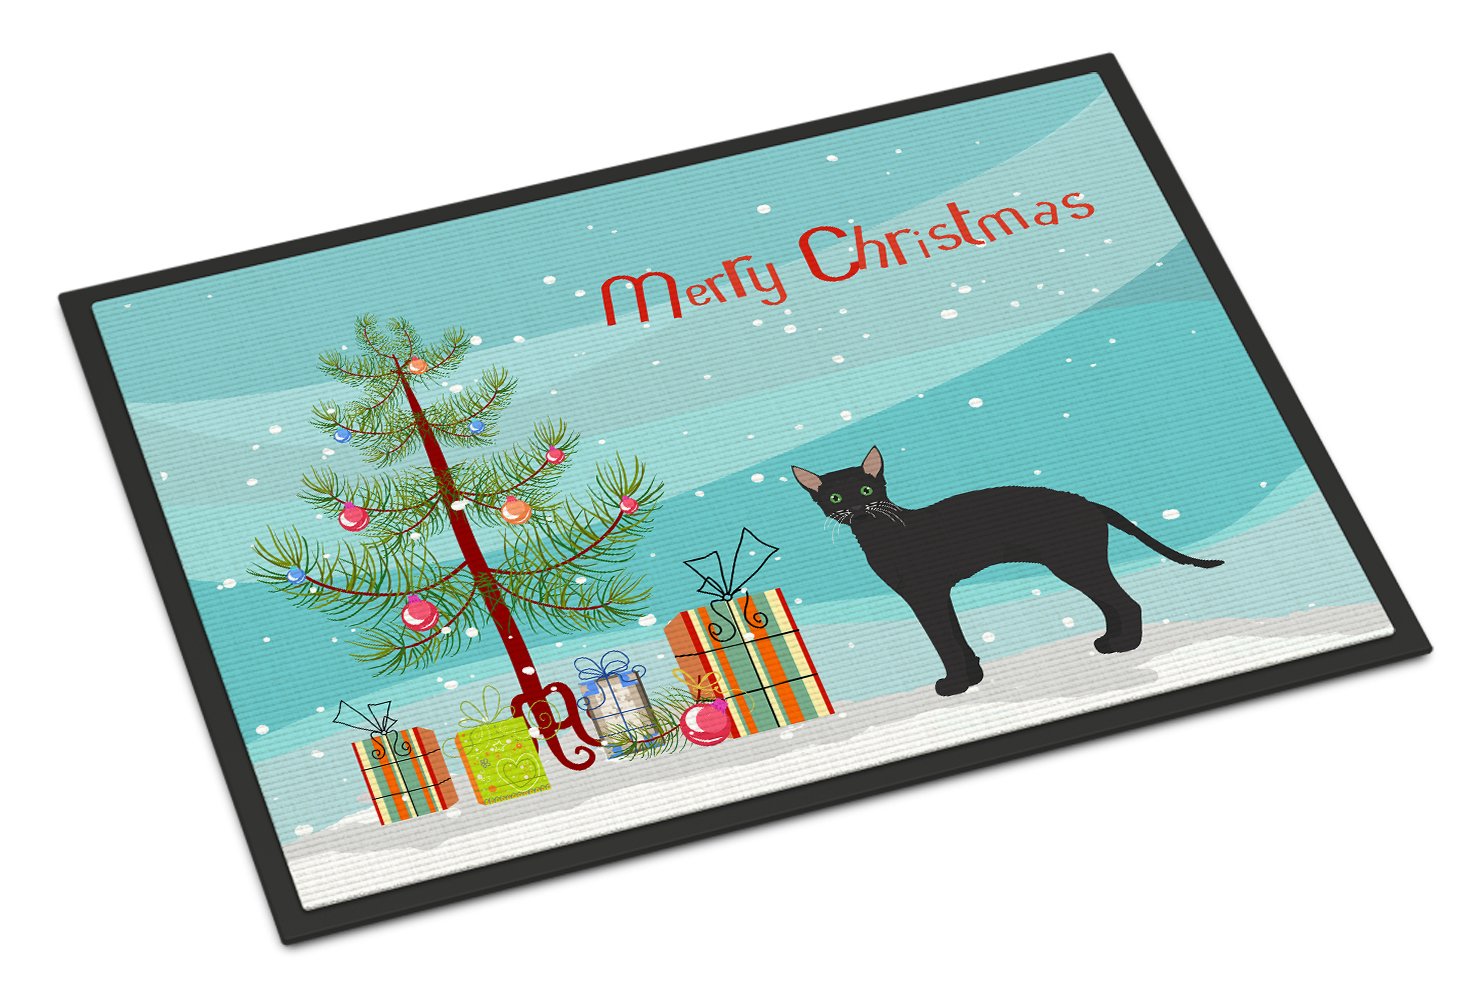 Black German Rex Cat Merry Christmas Indoor or Outdoor Mat 24x36 CK4626JMAT by Caroline's Treasures